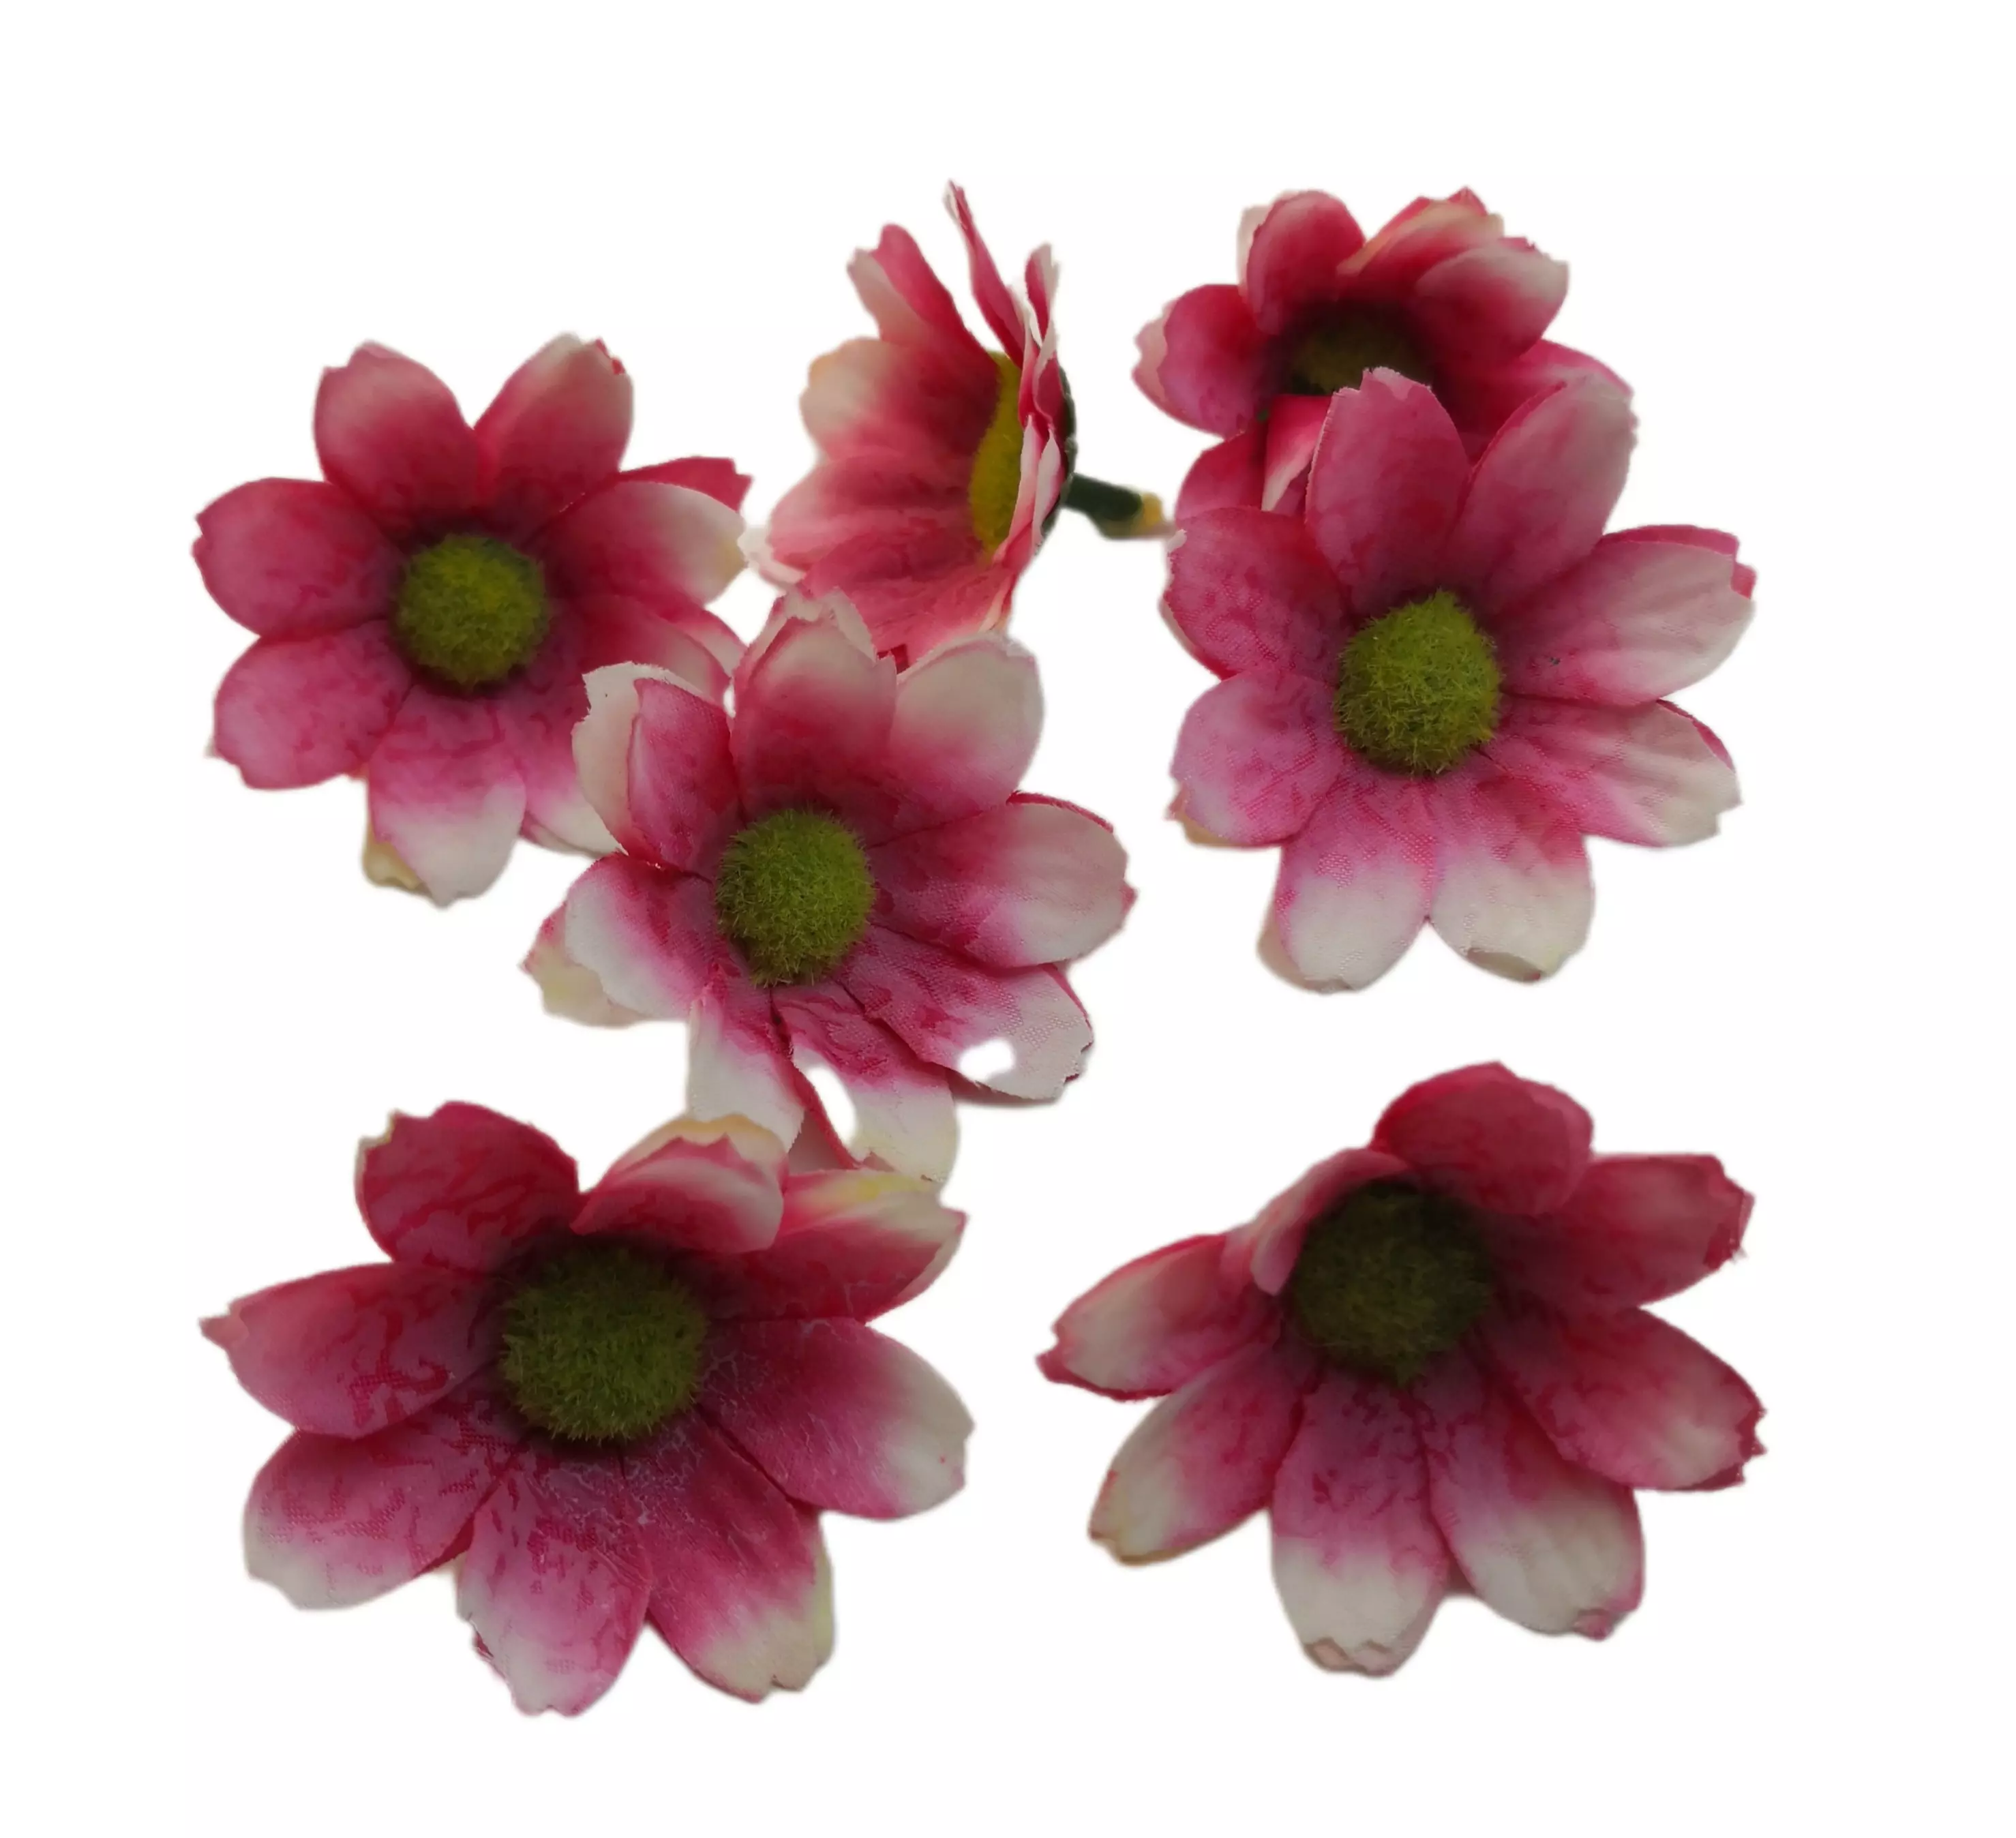 Tavaszi virágfej 5 cm Cirmos pink